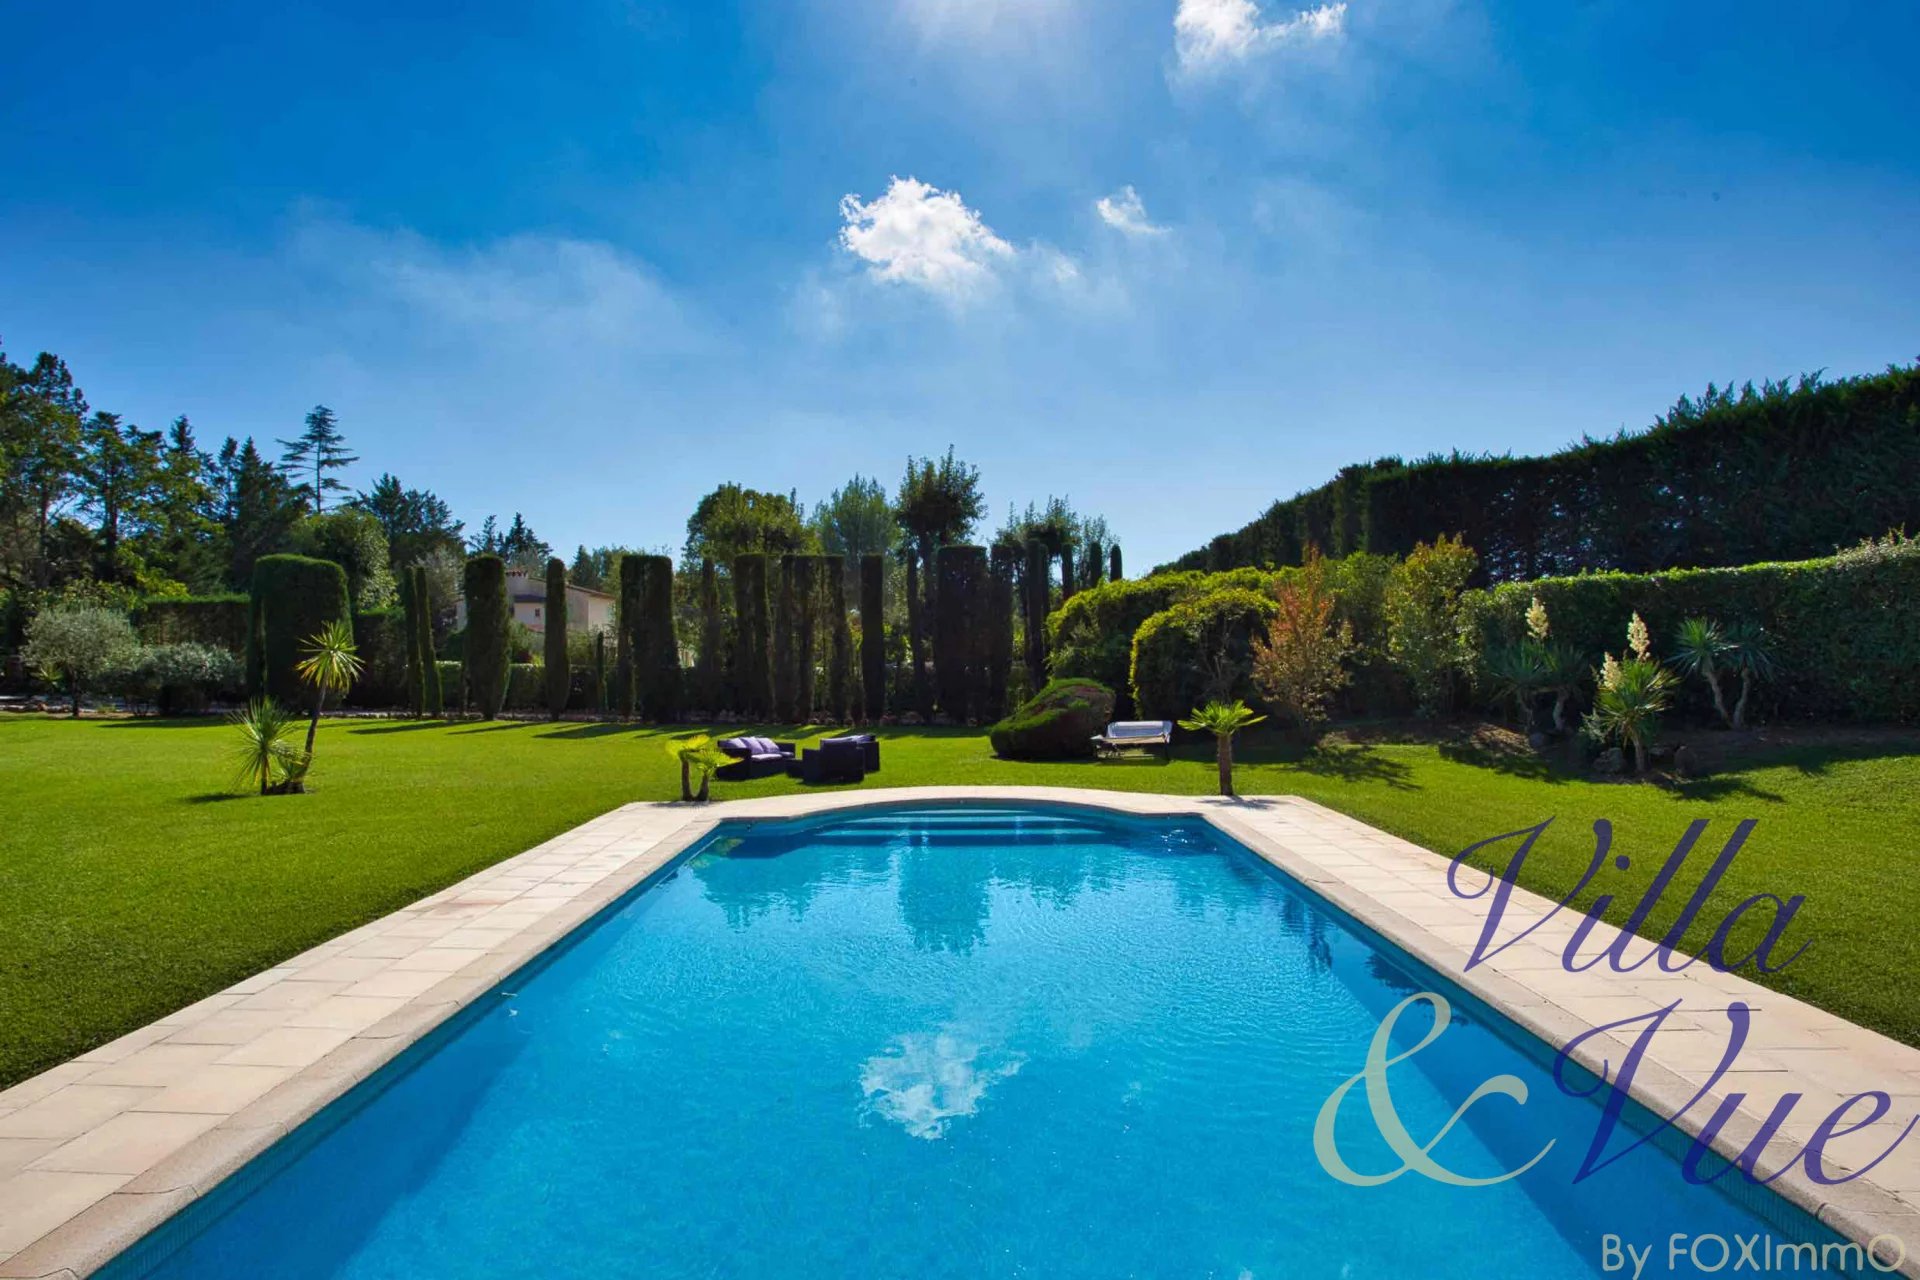 Chateauneuf, Magnifique Bastide, 280m2, 5 chambres, dépendance, 5000m2 de terrain plat et paysager, piscine, triple garage